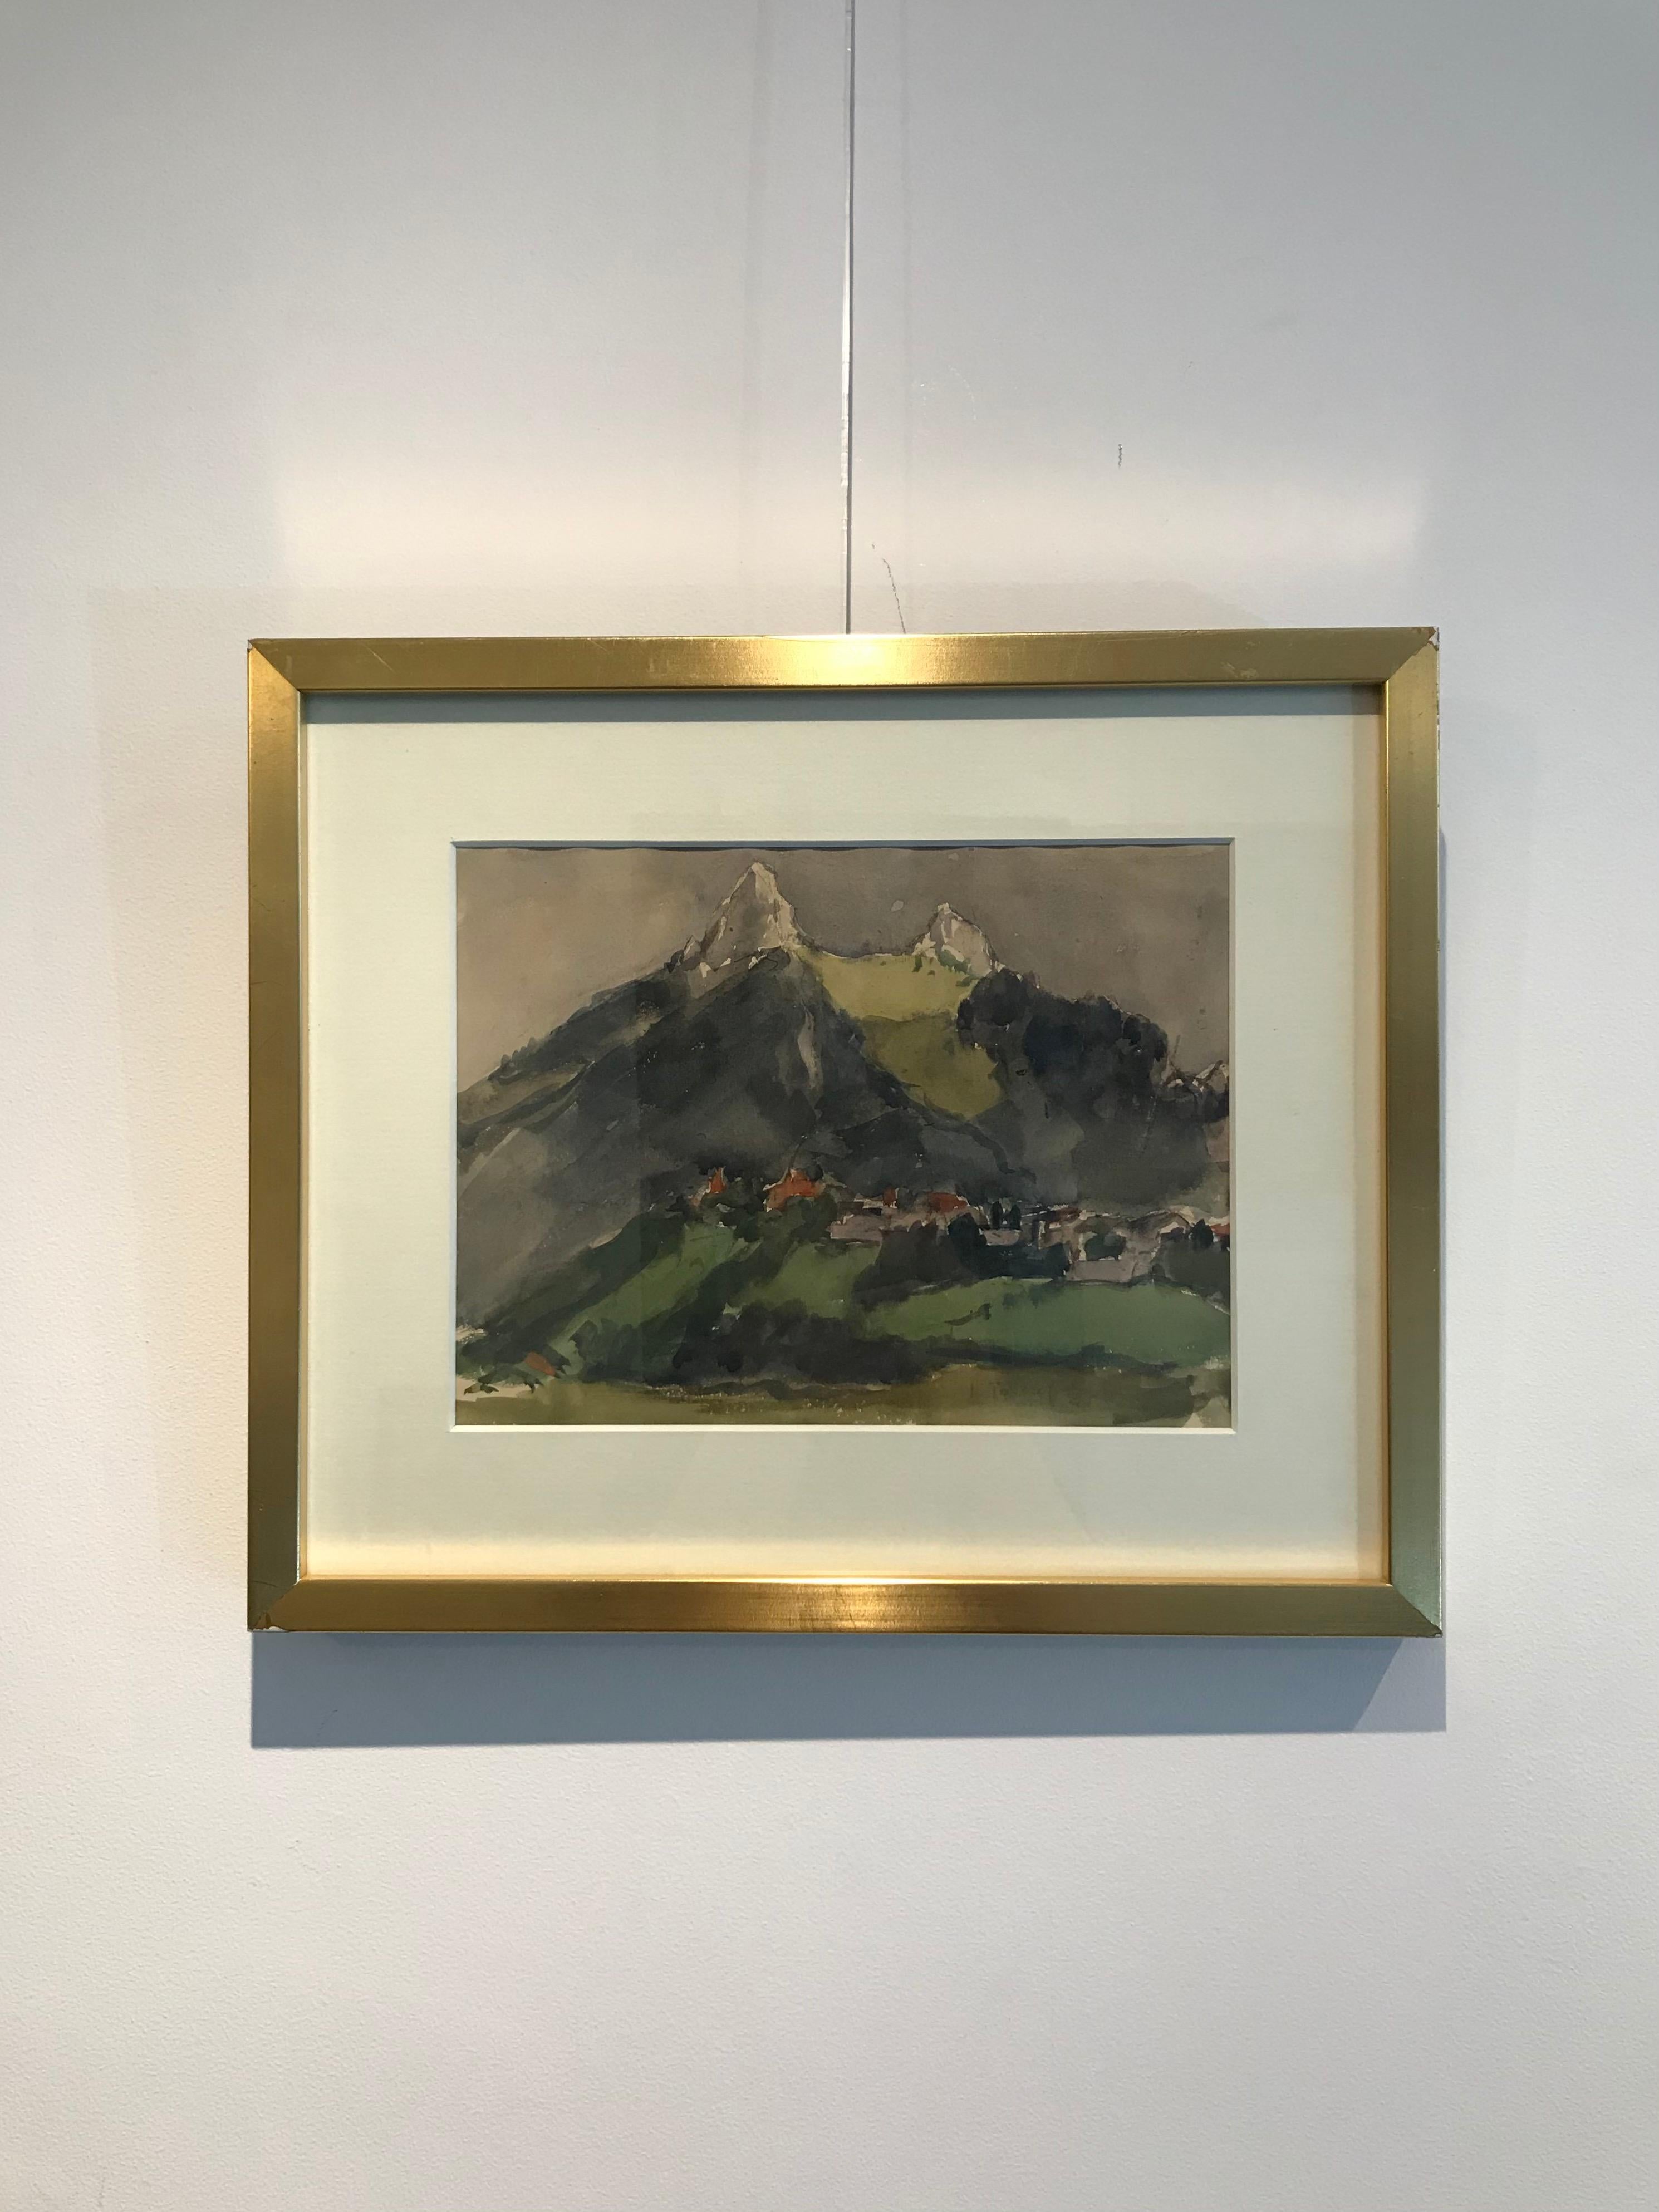 Mountainous landscape - Painting by John Torcapel